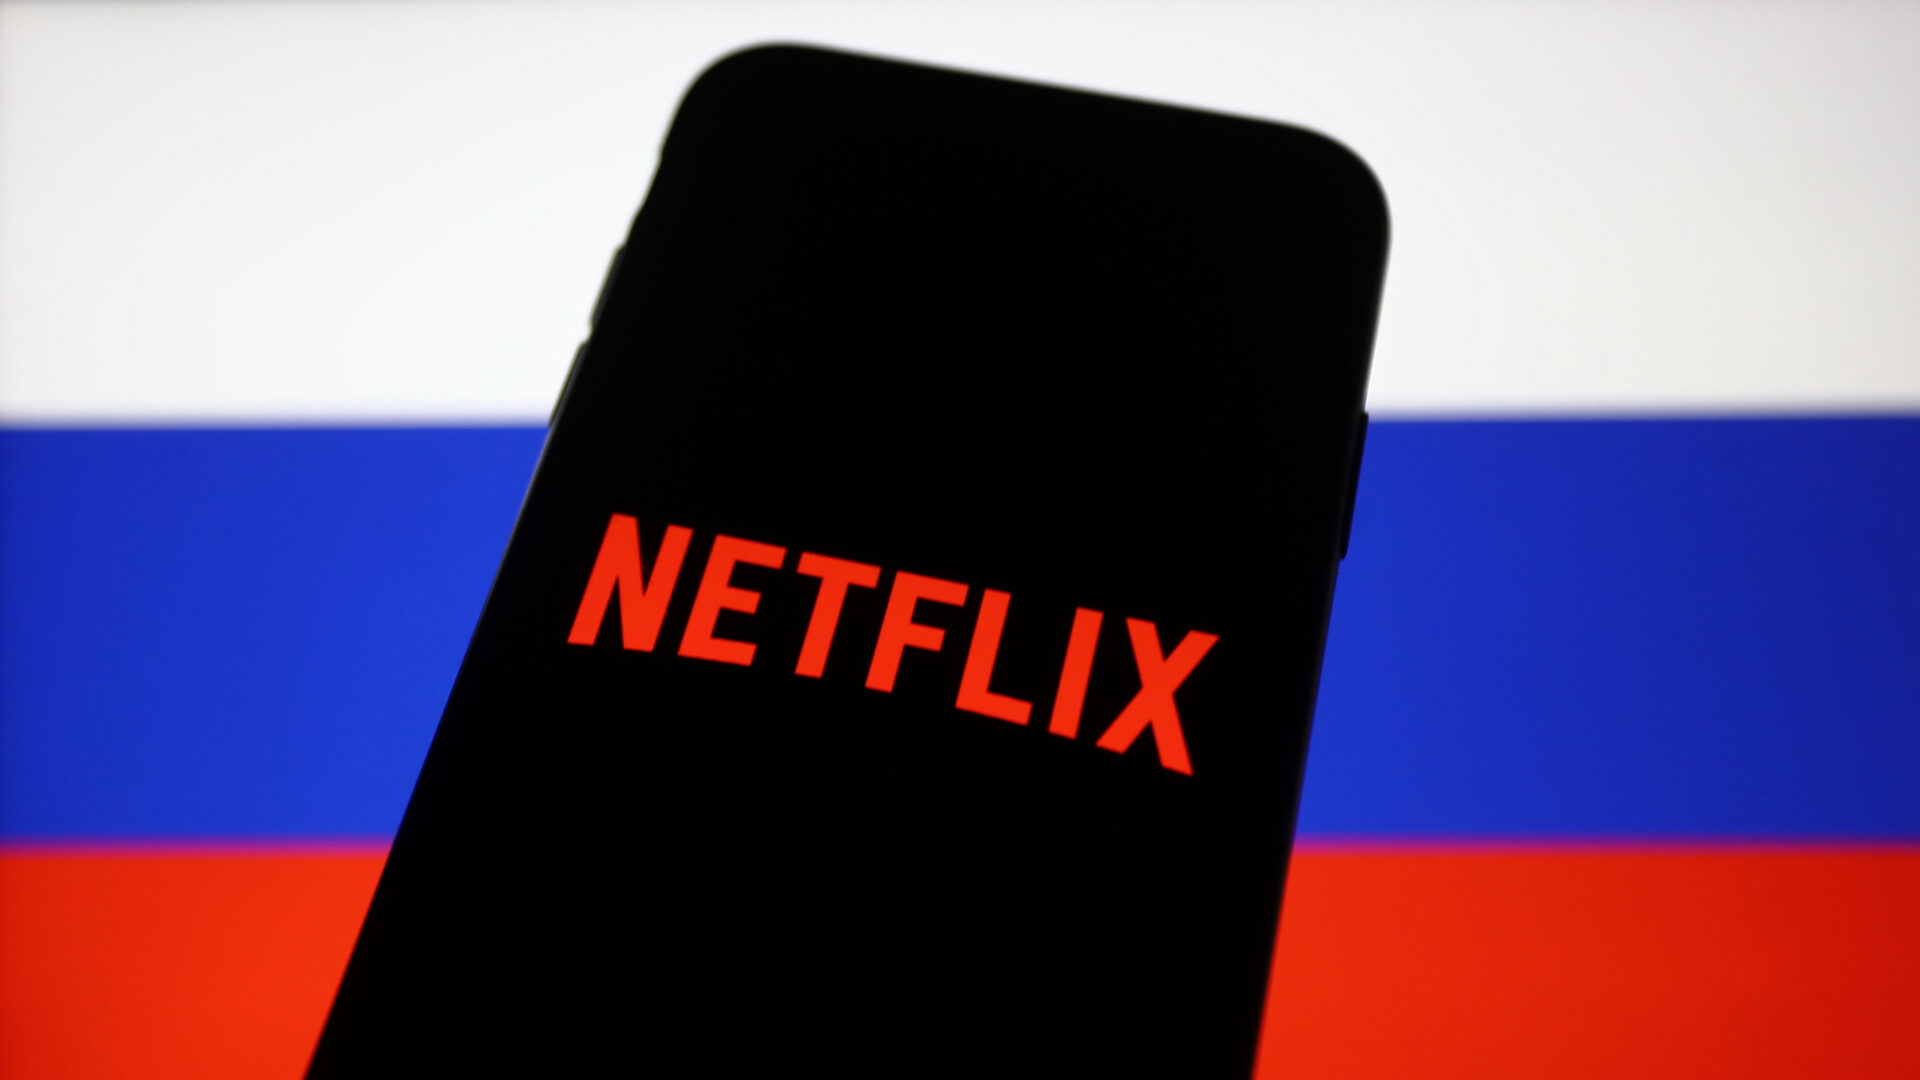 Netflix หยุดให้บริการในรัสเซีย ก่อนปล่อยสารคดียูเครน ให้ดูฟรีบน YouTube